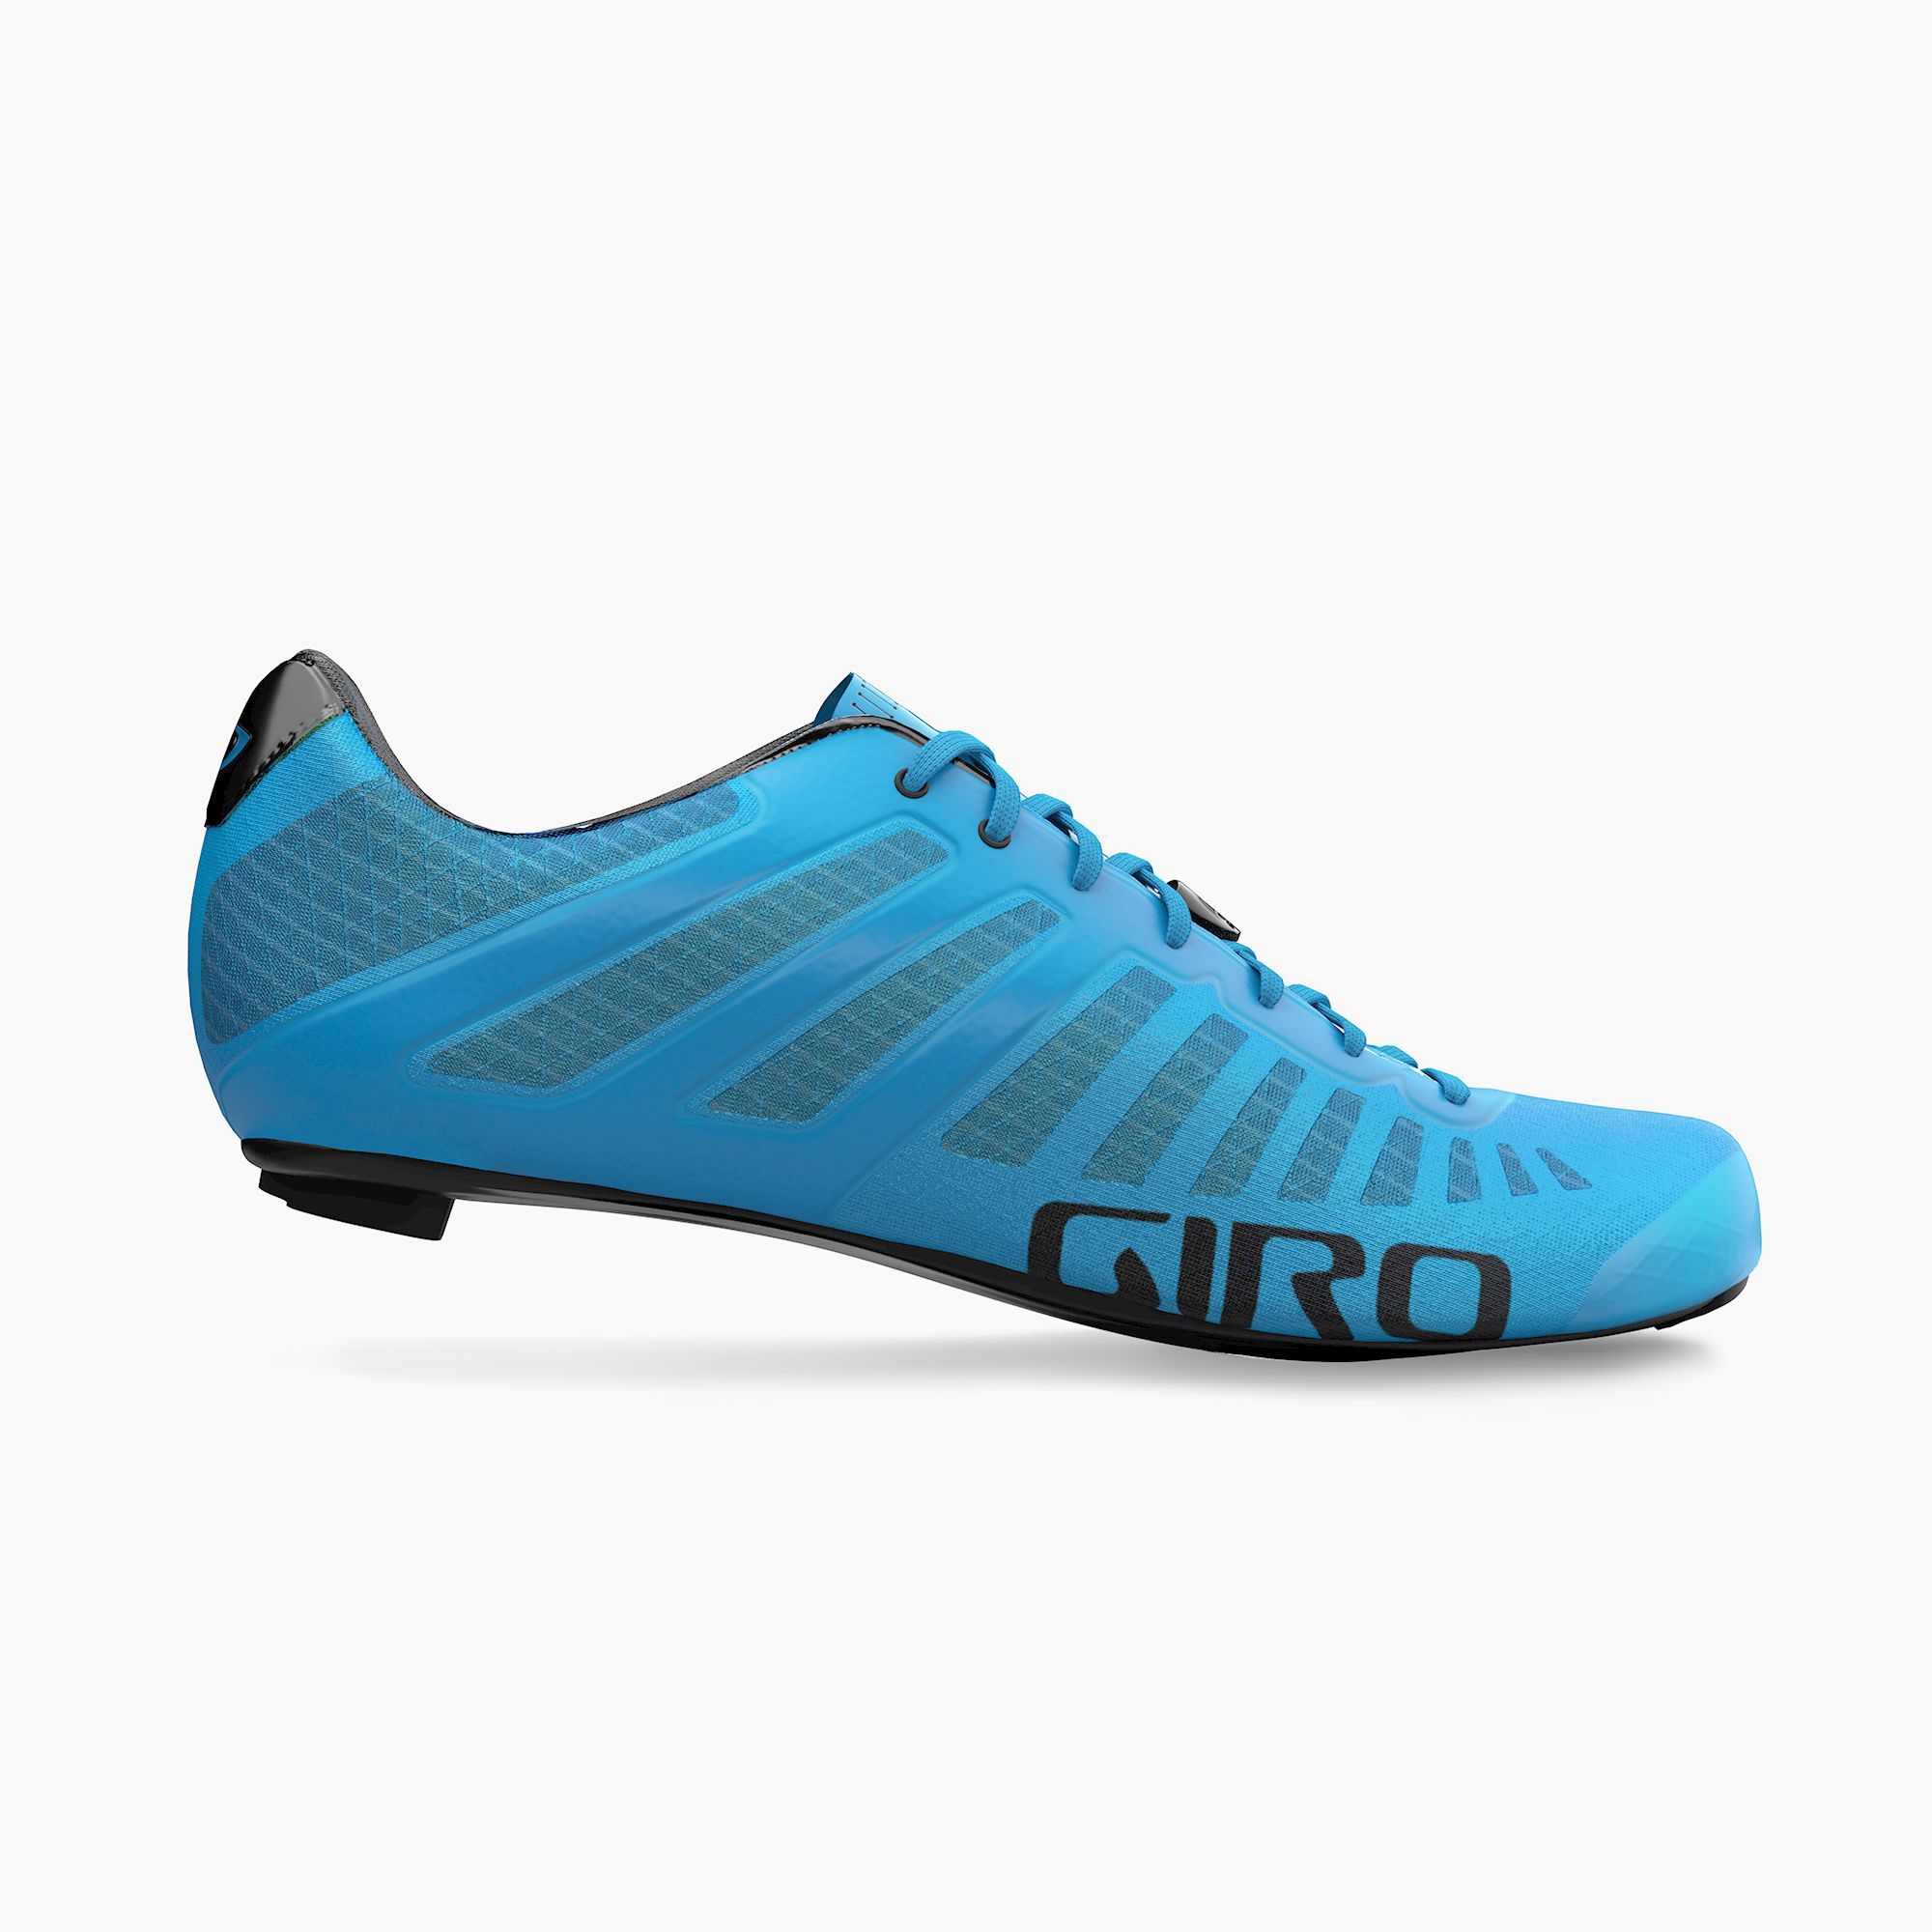 Empire SLX Shoe | Giro